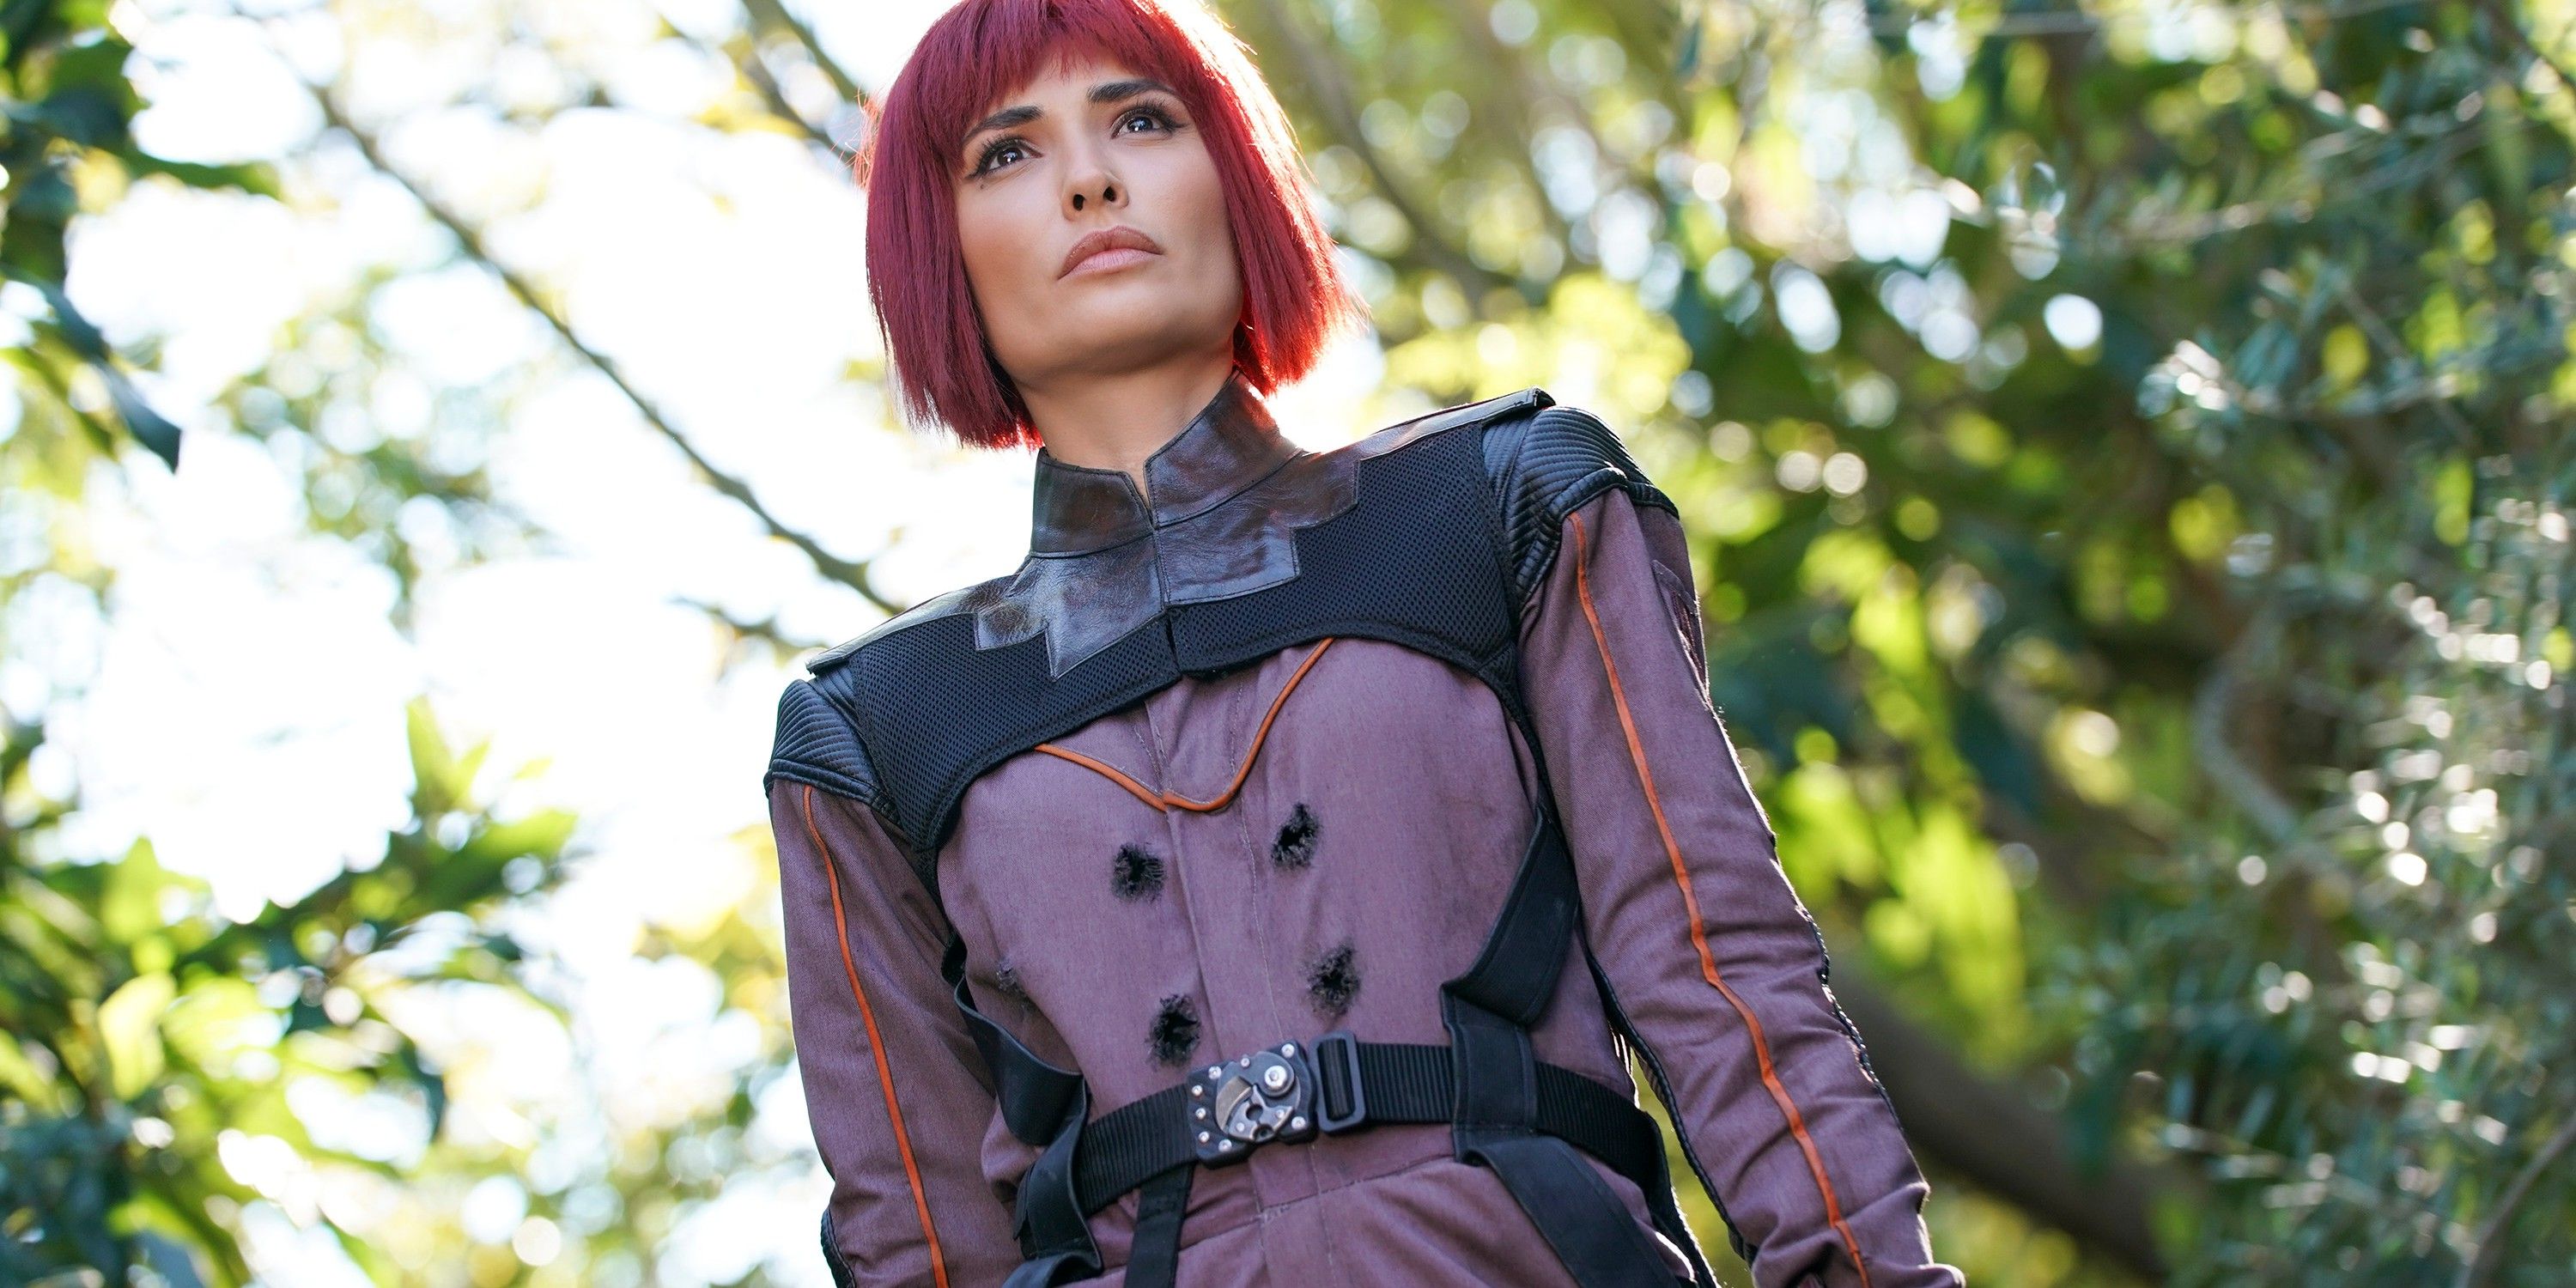 Izel standing in a forest wearing purple space gear in Agents of SHIELD